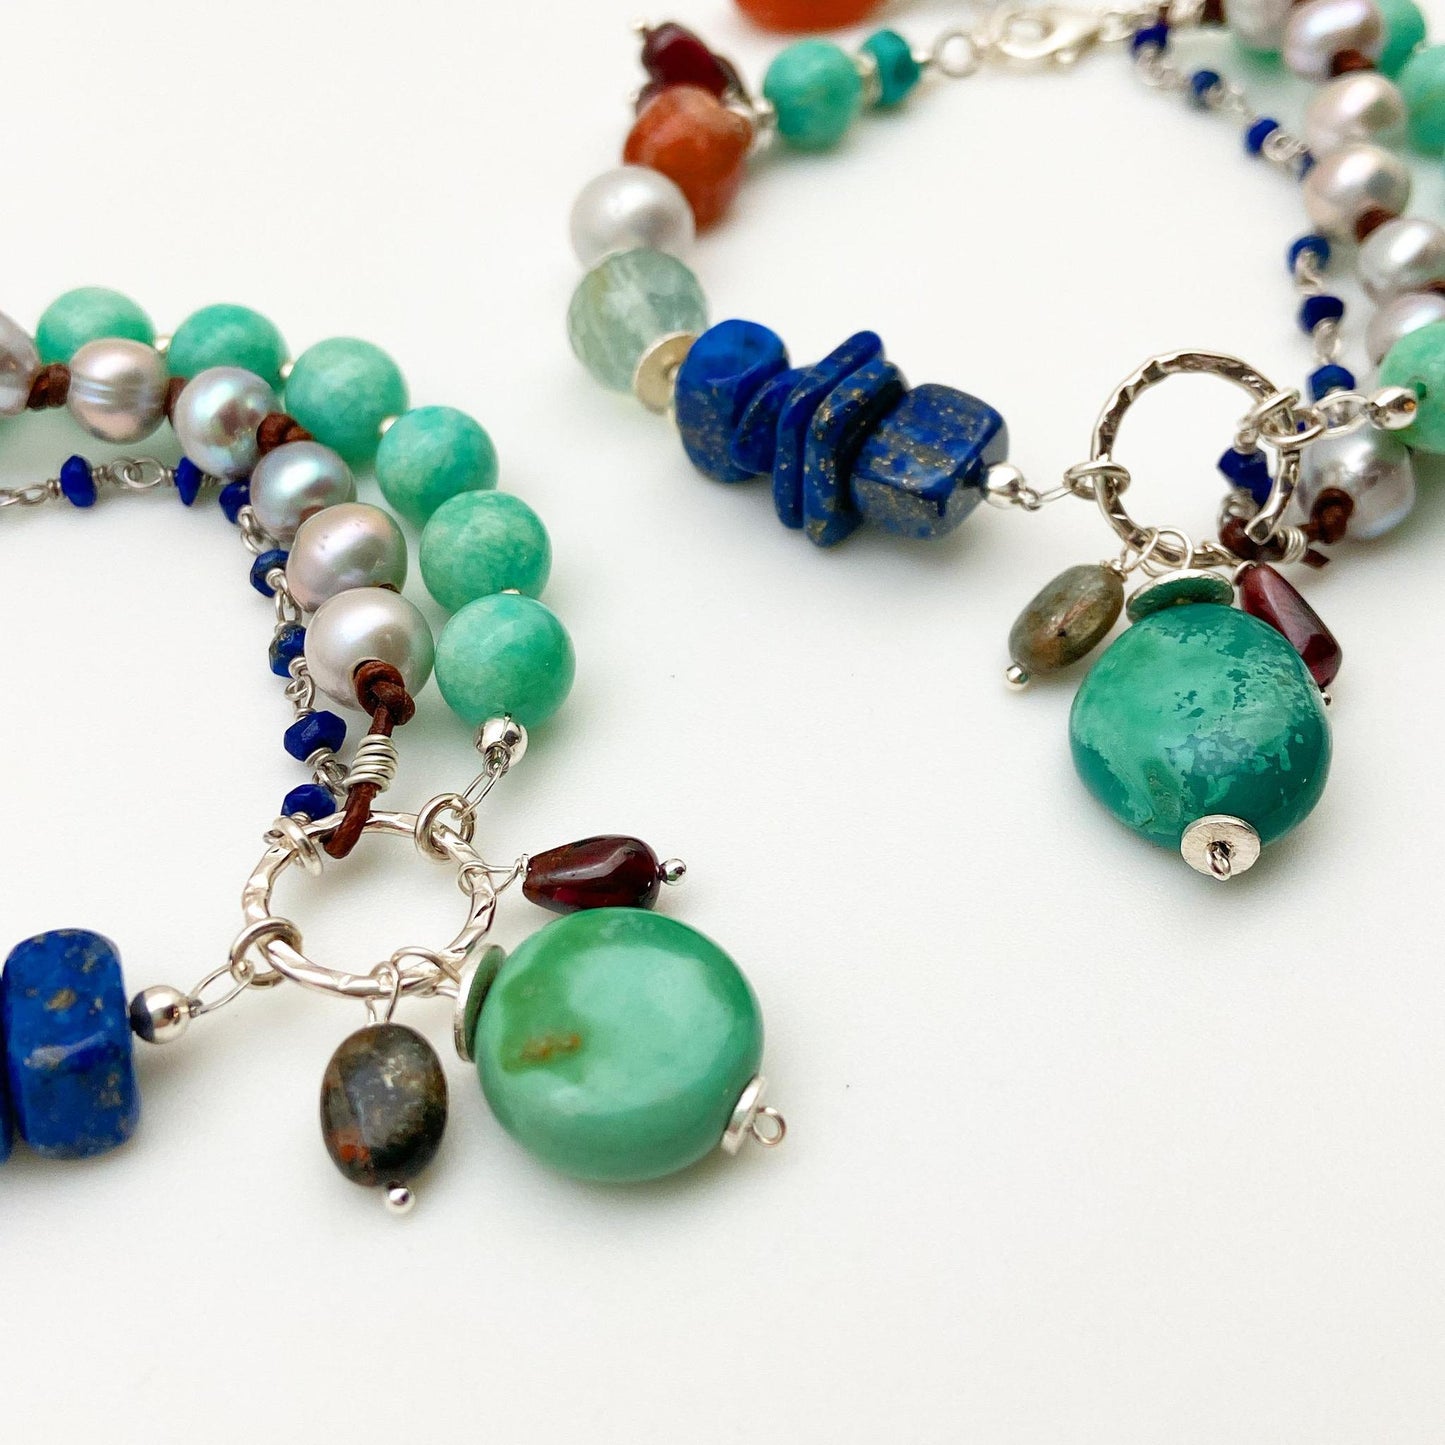 Bracelet - "Grounded" - Turquoise, Amazonite, and Lapis Lazuli